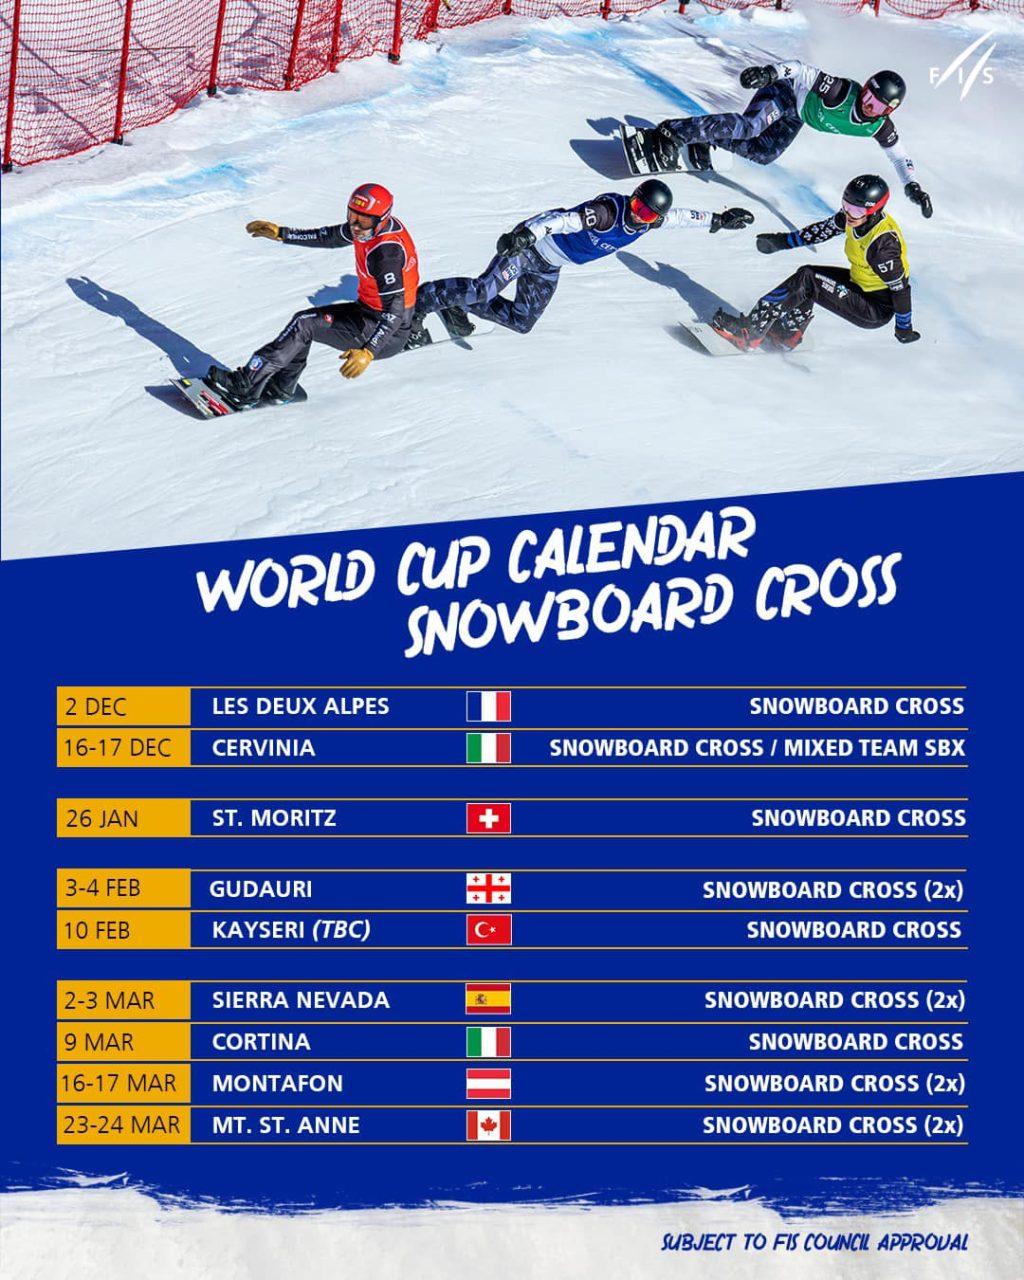 Este año la Copa del Mundo de Snowboard Cross y Ski Cross contará con 13 pruebas distribuidas entre 8 países diferentes.